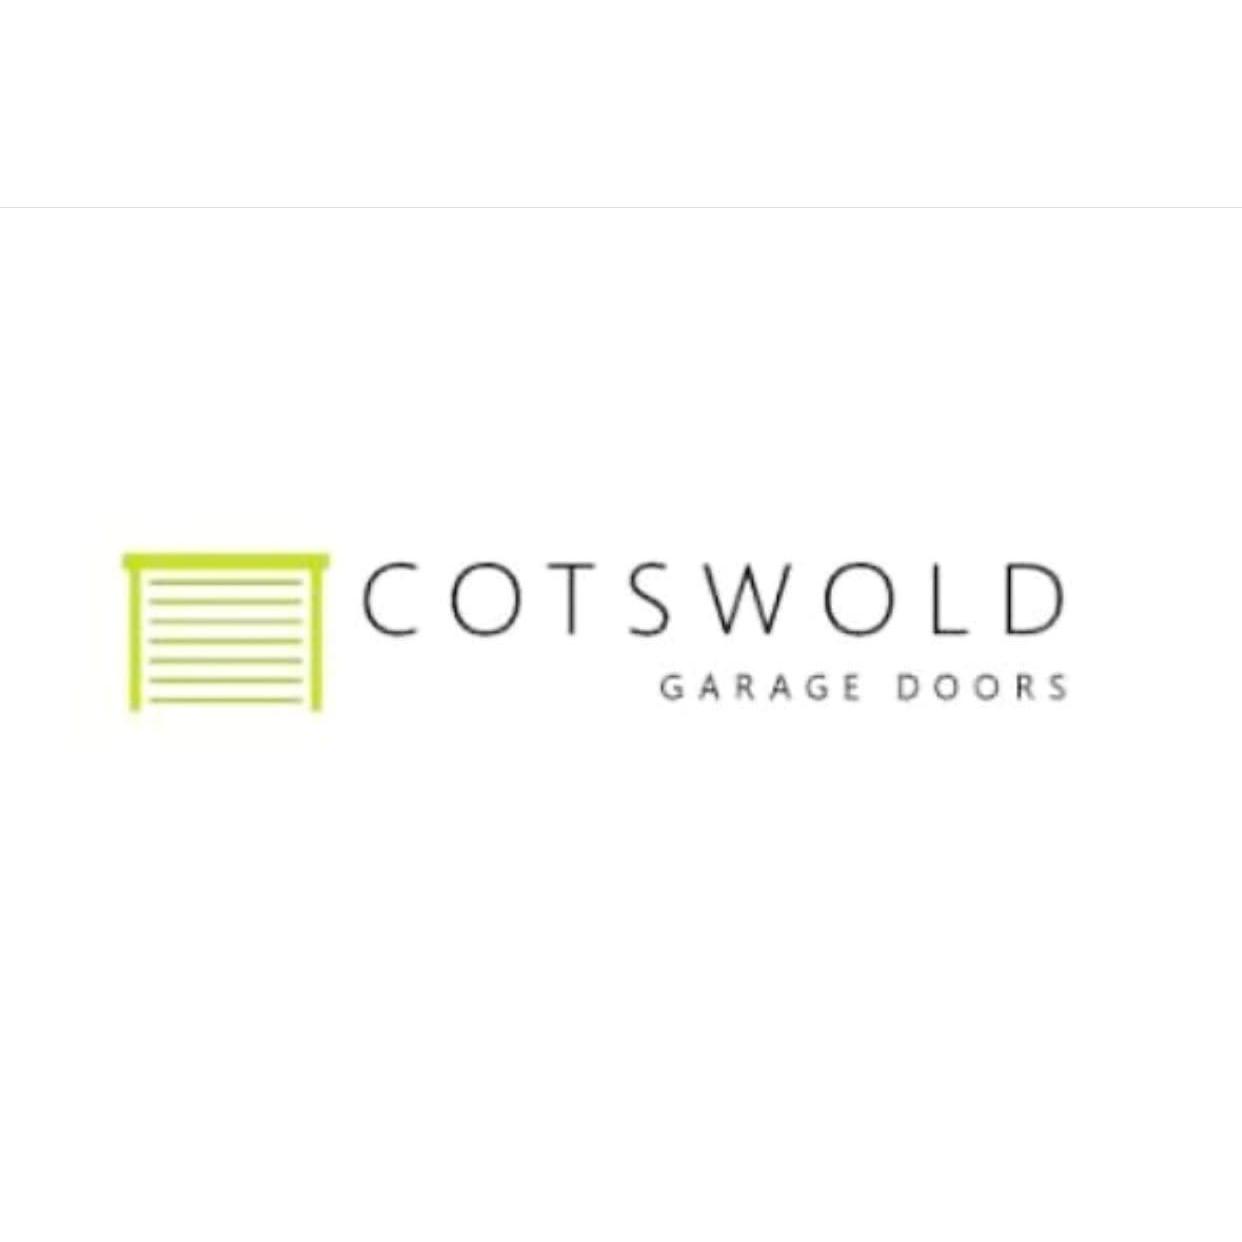 Cotswold Garage Doors Logo